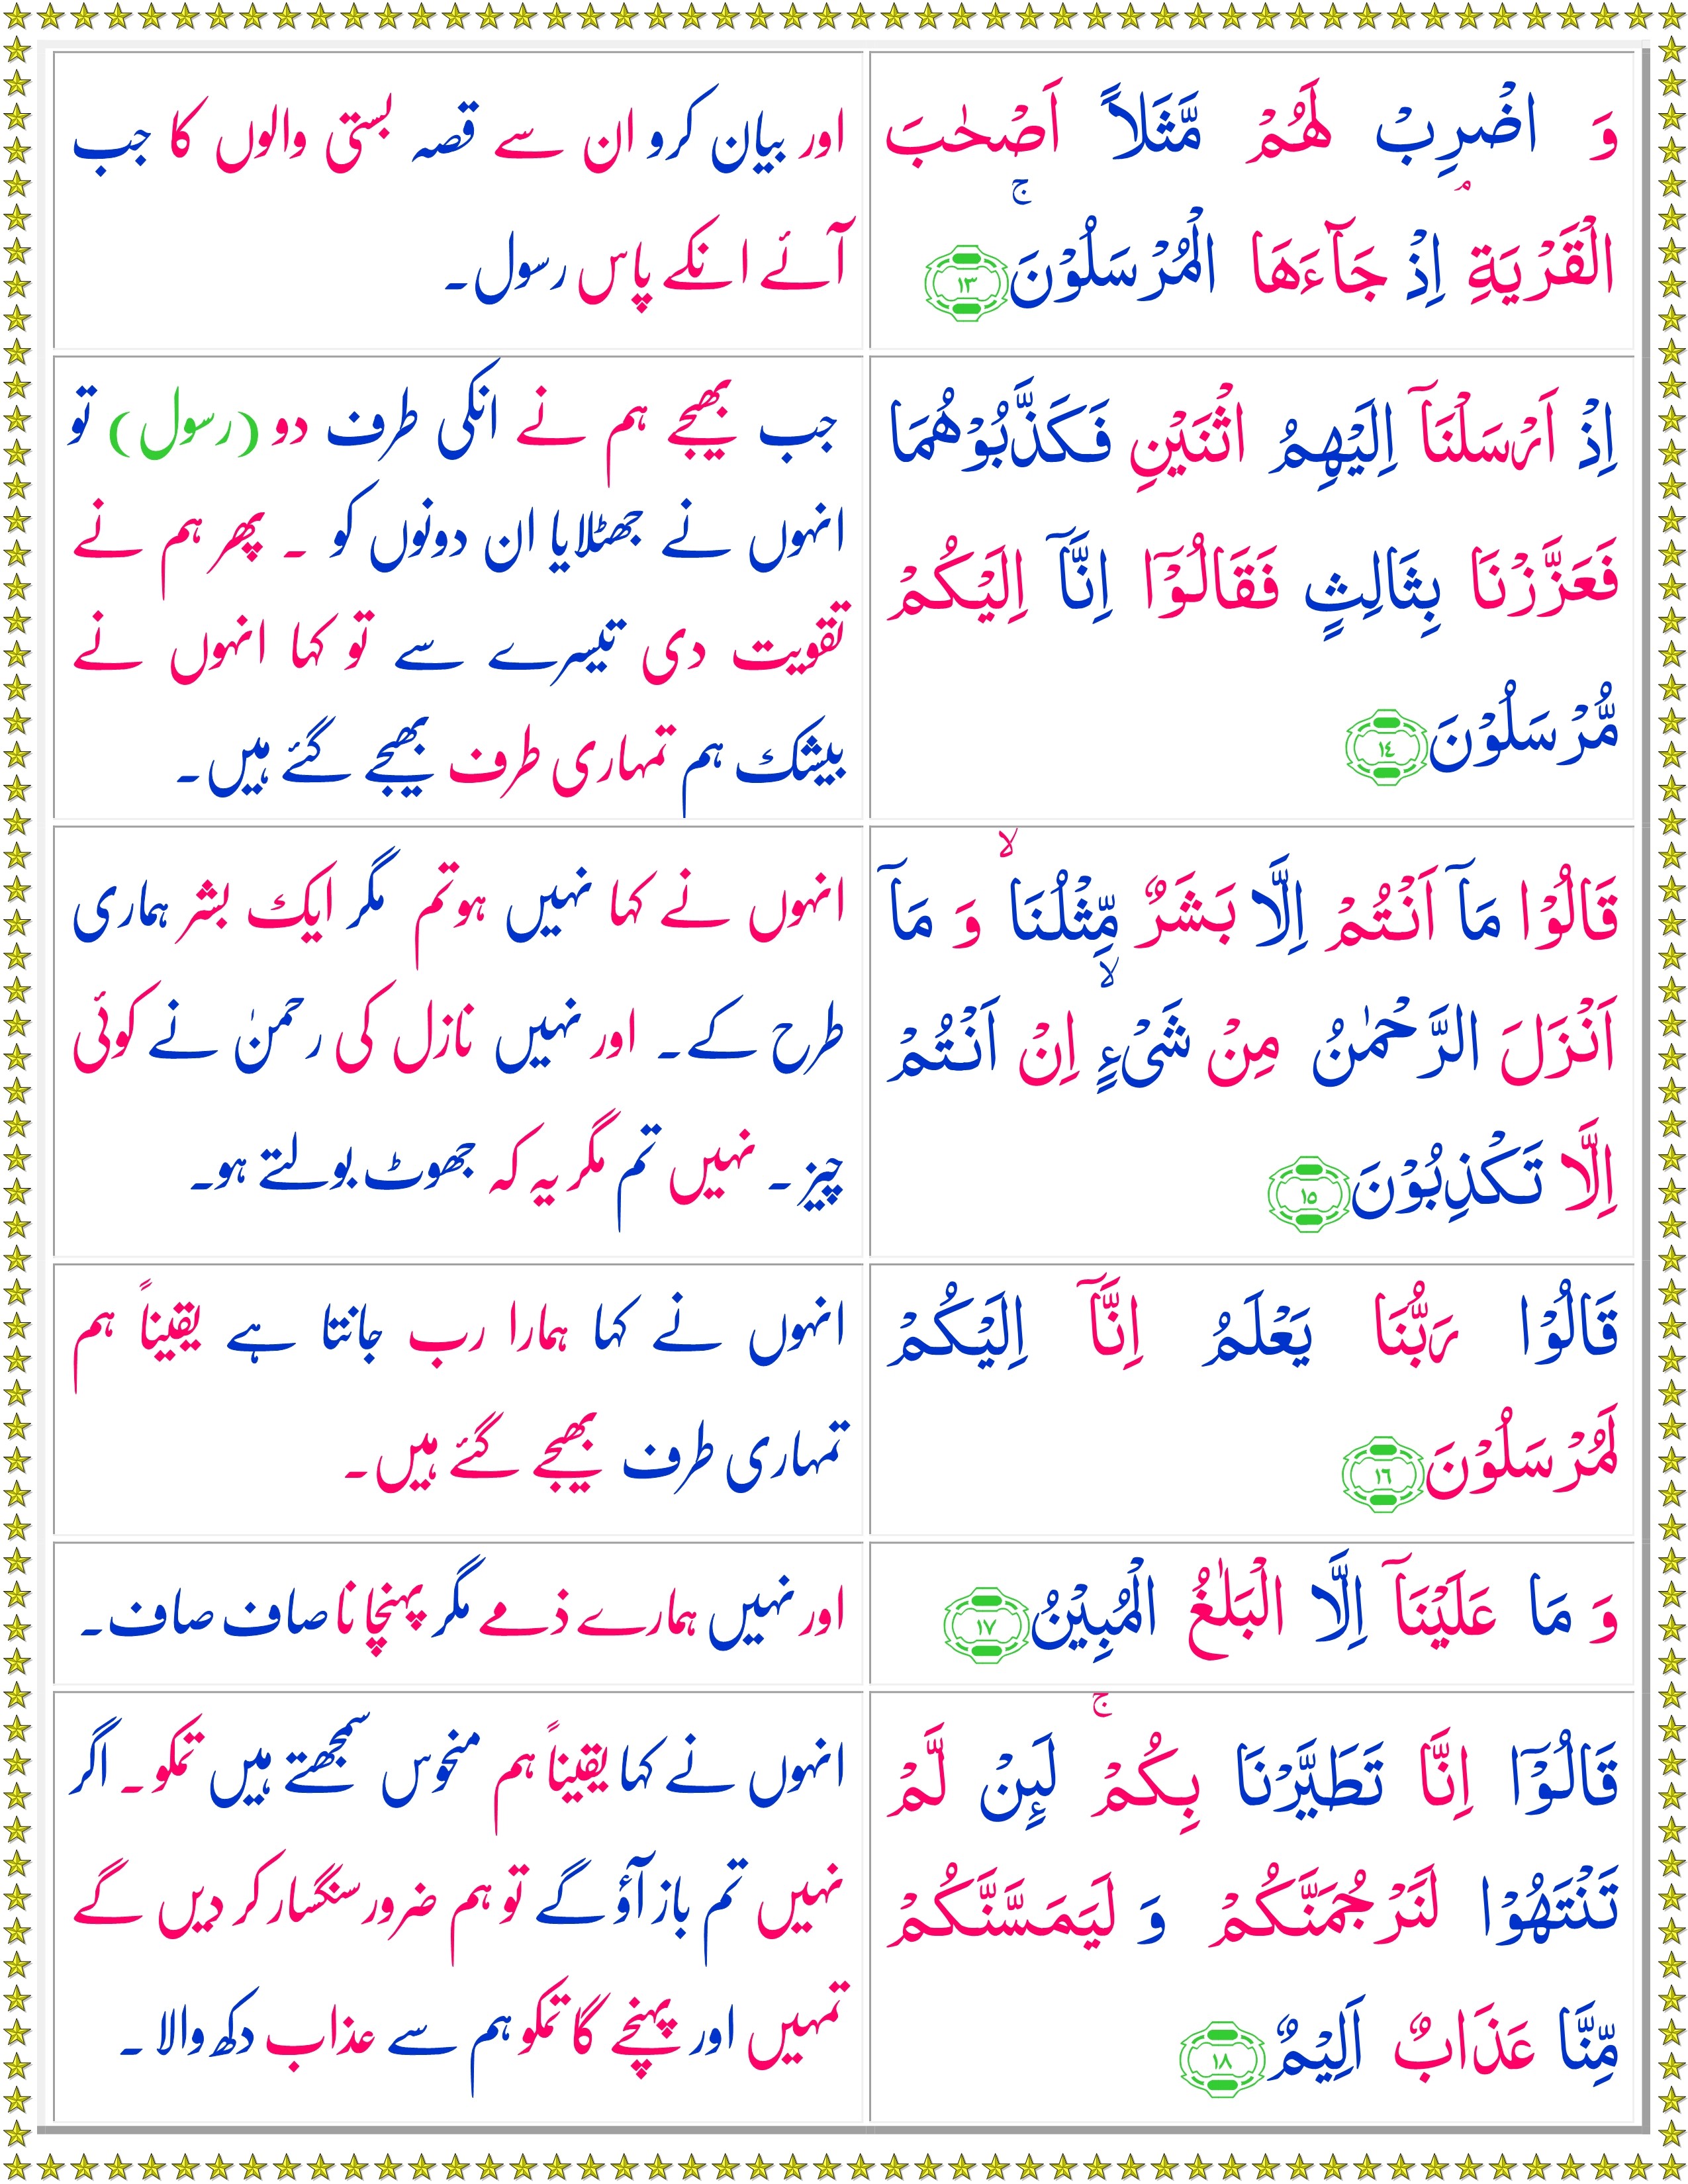 Online Quran Reading Surah Yasin (Urdu) - Quran o Sunnat